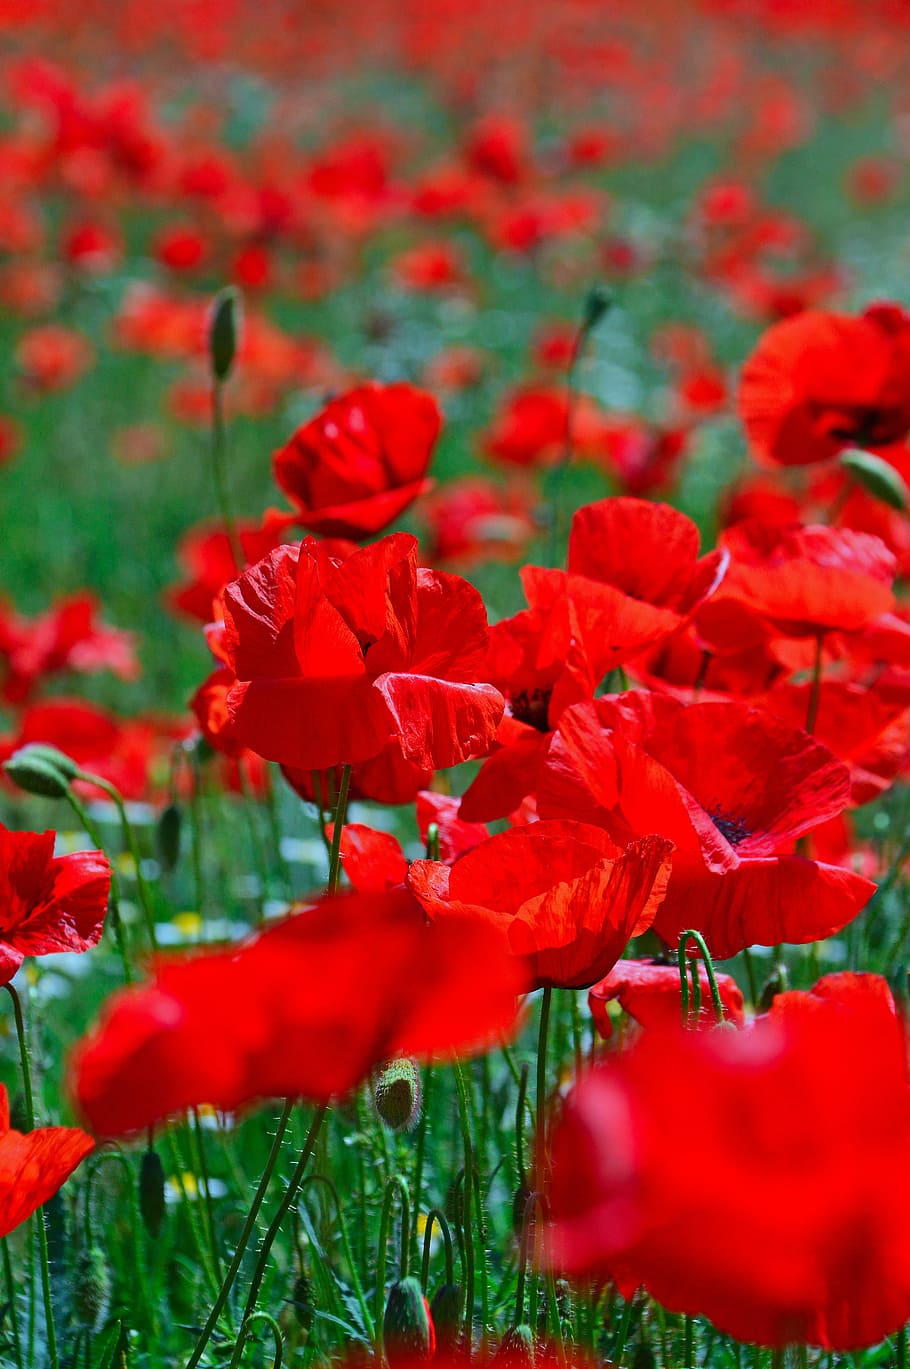 campo de amapolas, estado de ánimo, amapola, flor de verano, amapola roja, flor del prado, campo, flores silvestres, flor roja, plantas de verano